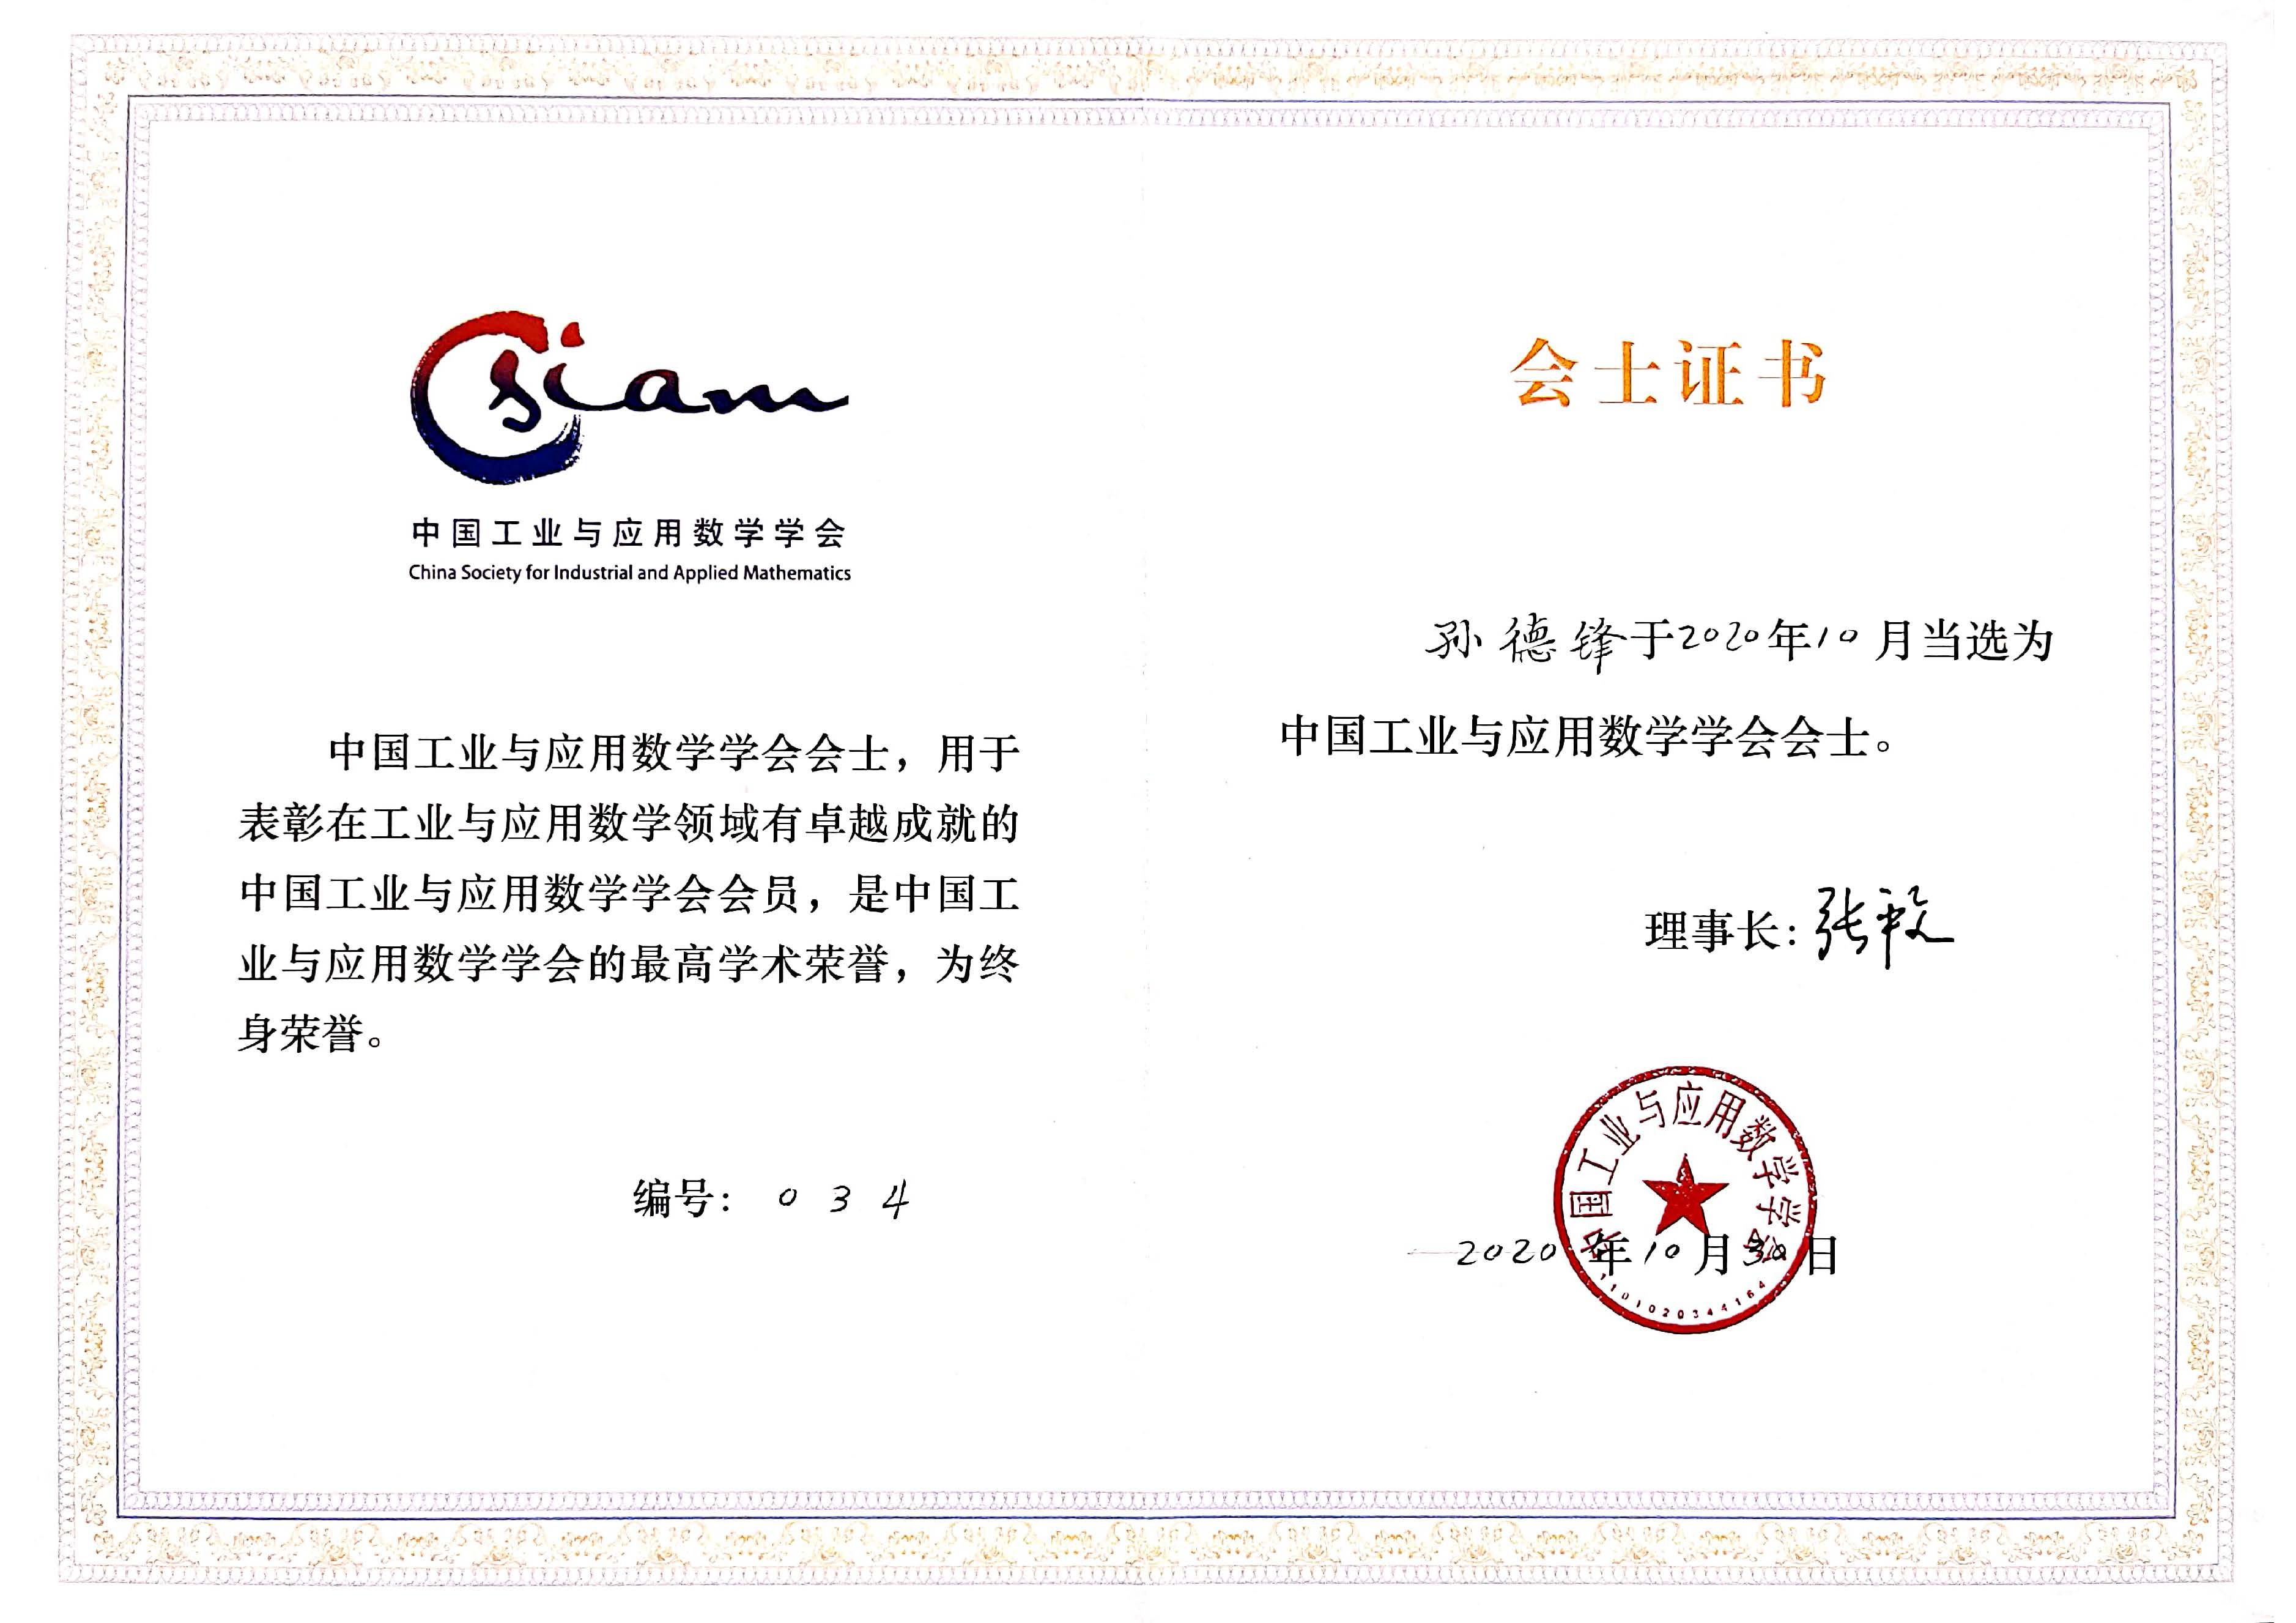 CSIAM certificiate_Prof Sun Defeng